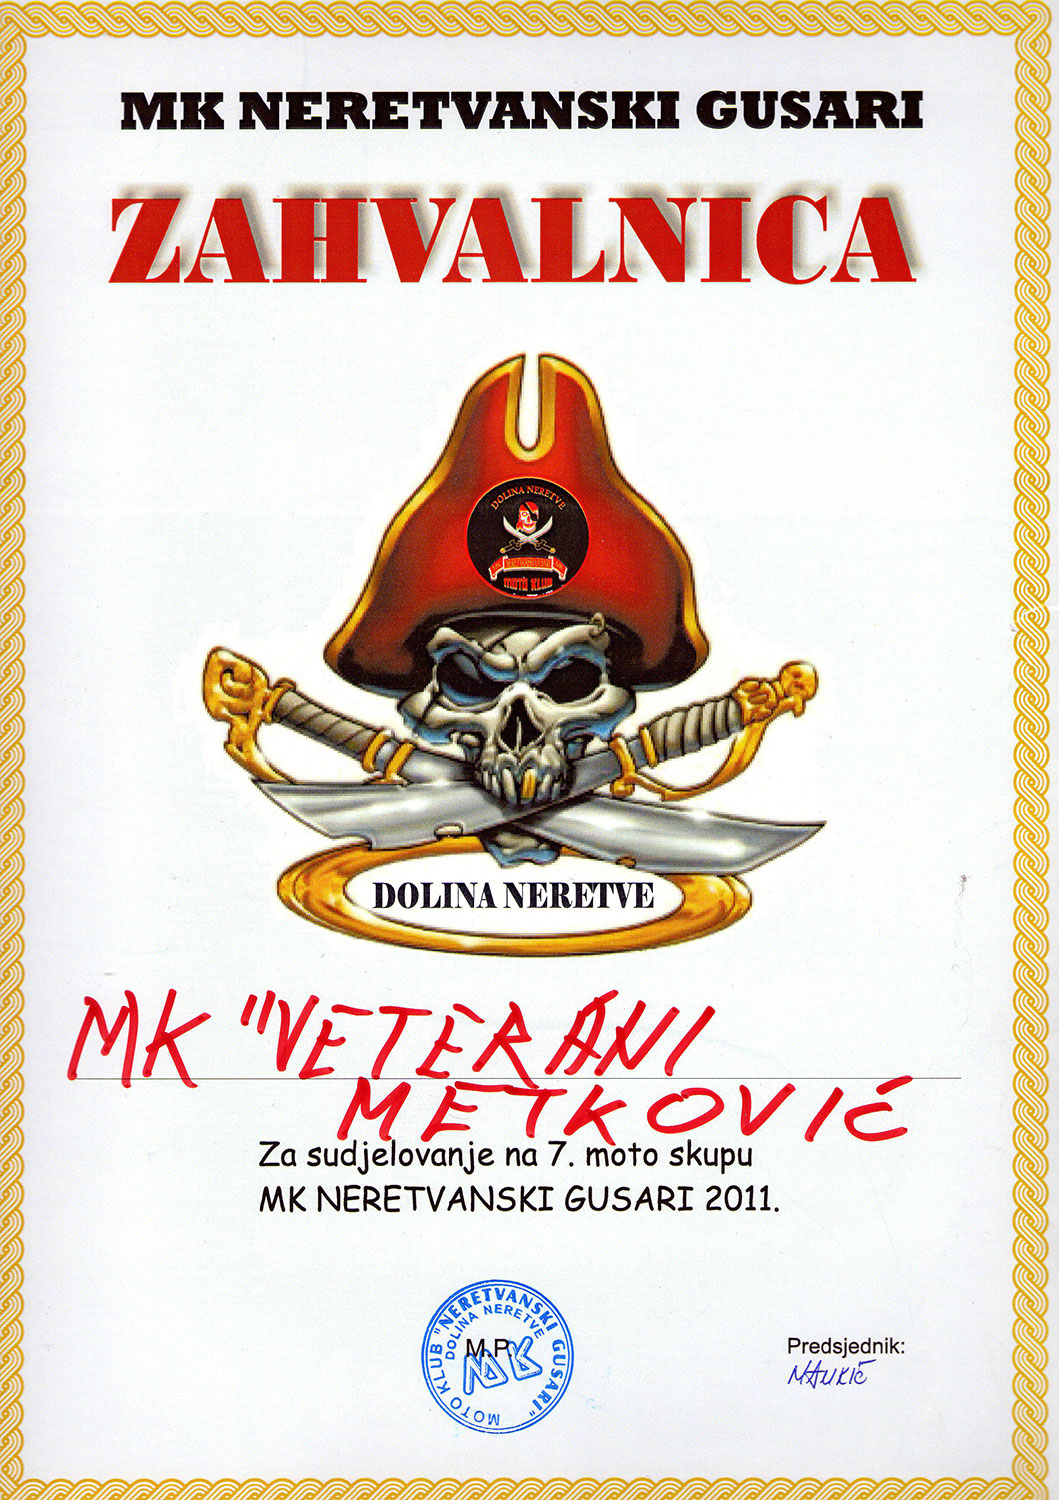 2011 06 10 mk neretvanski gusari metkovic